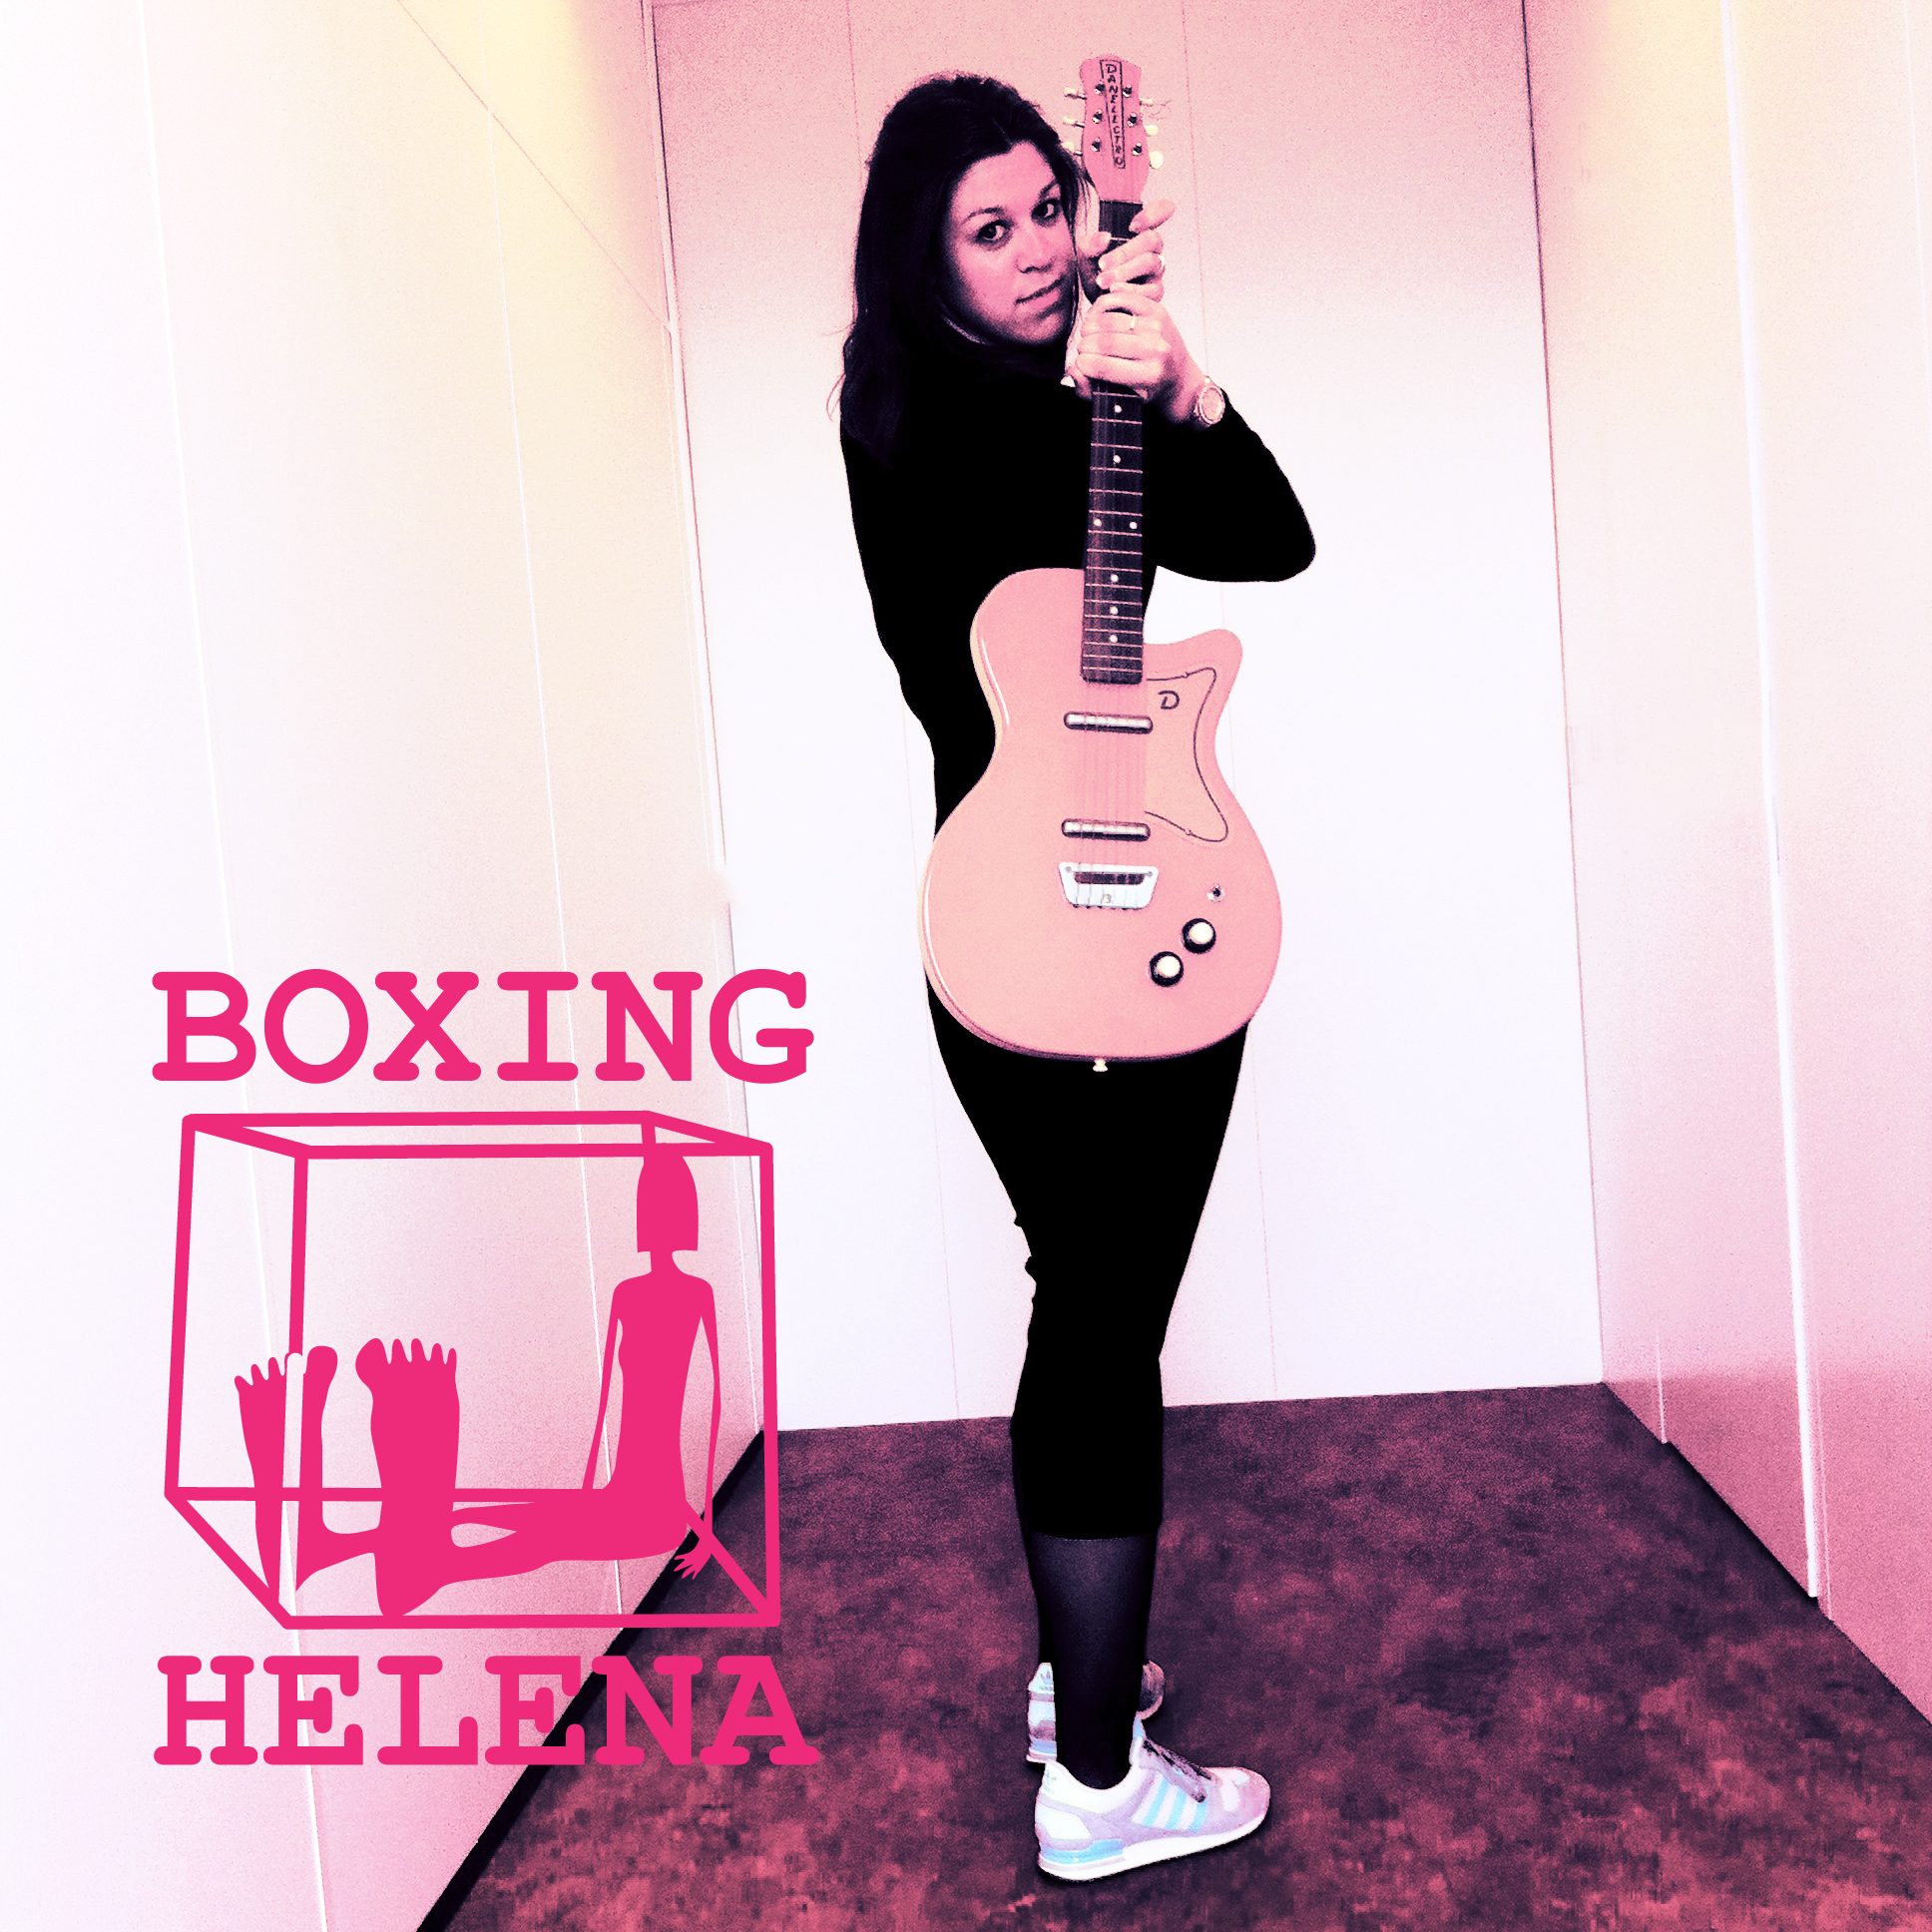 Boxing Helena